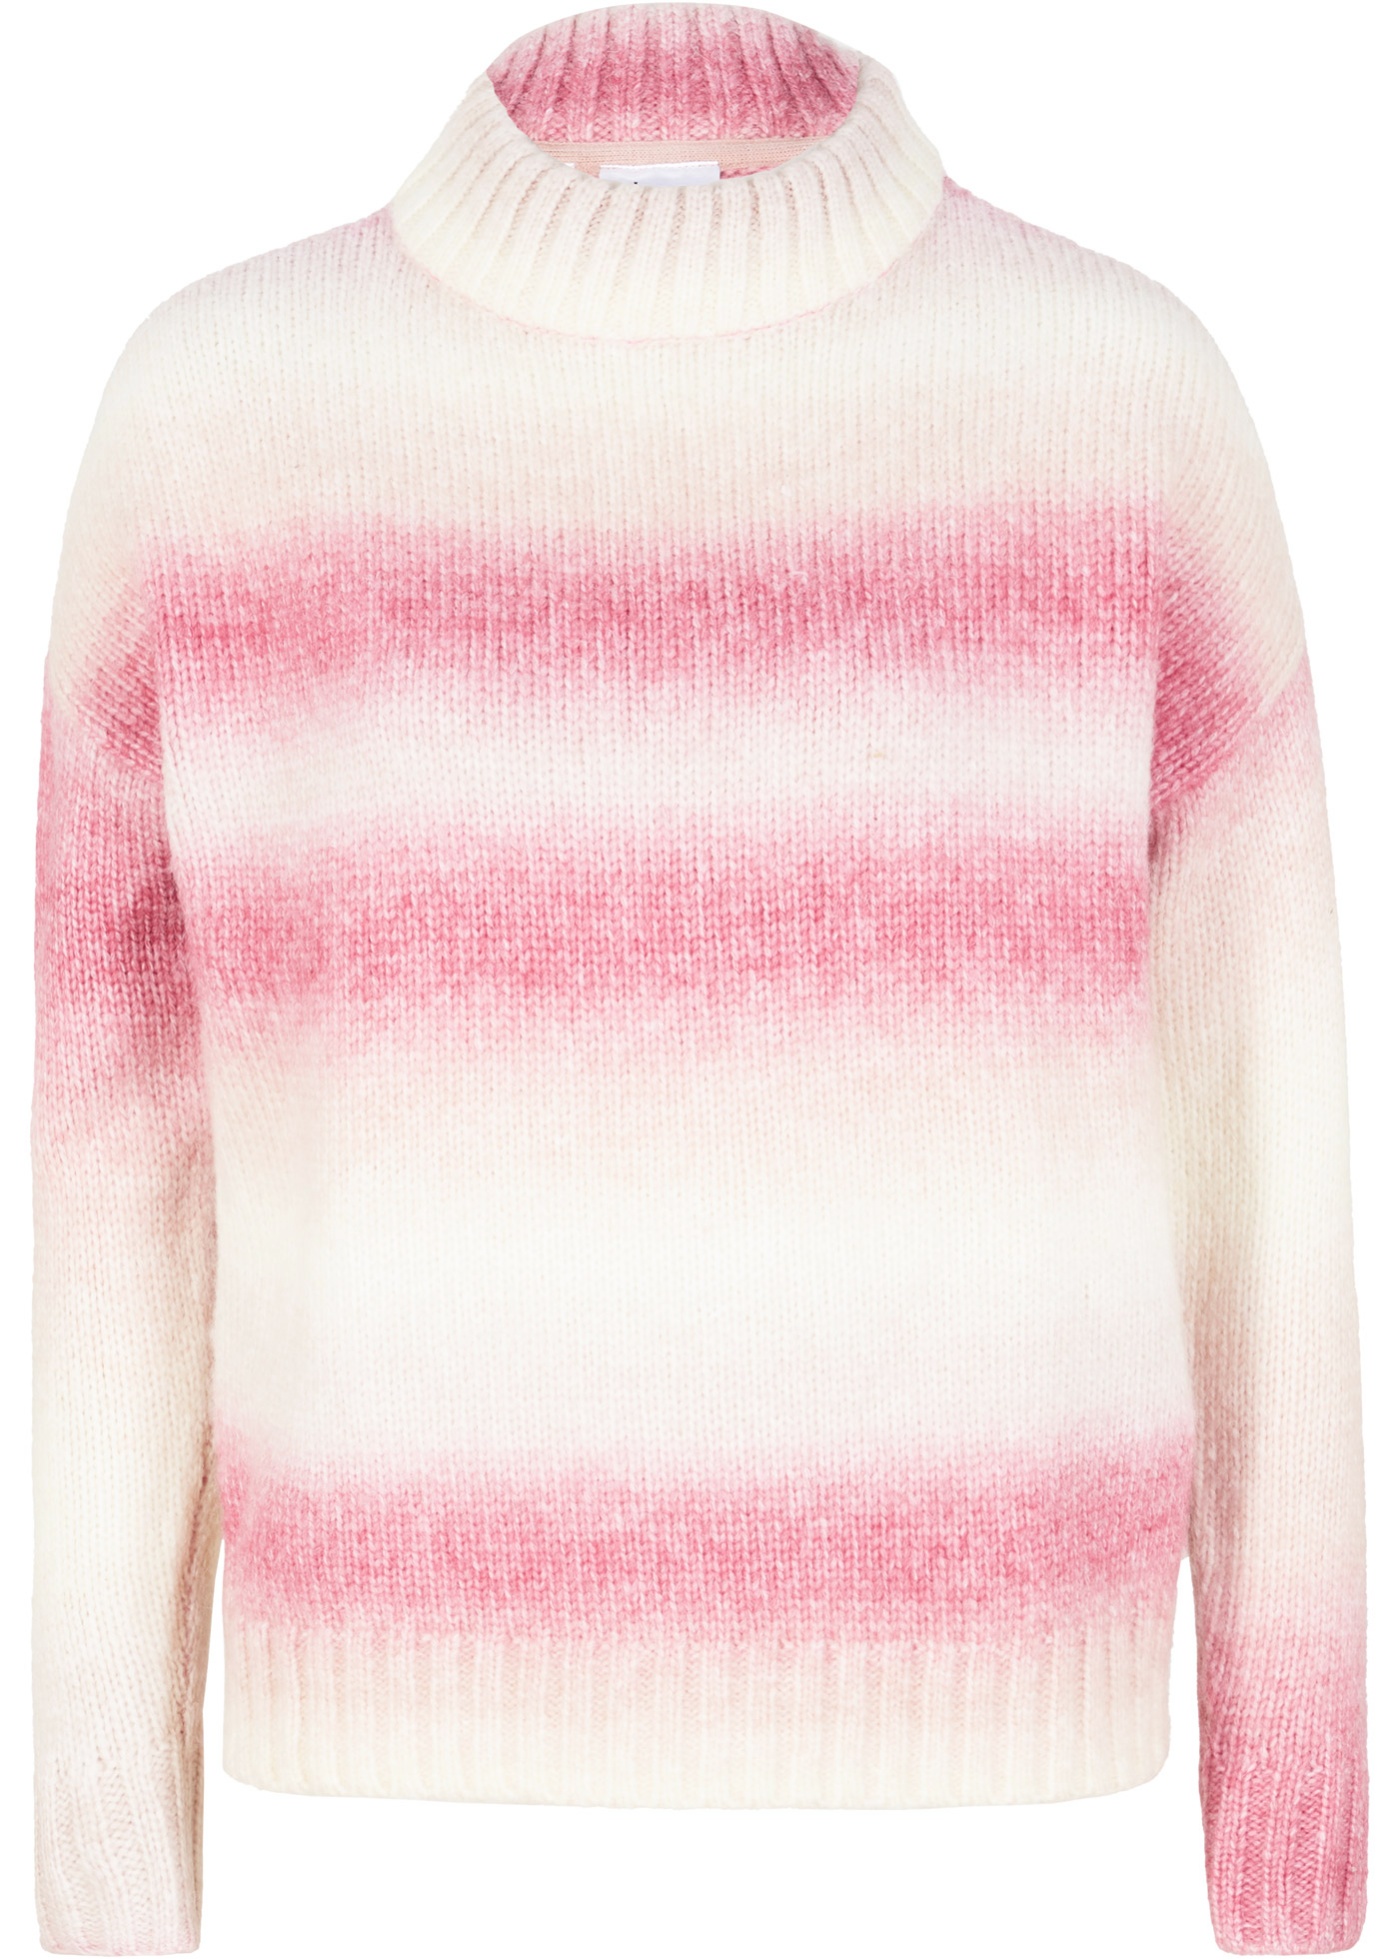 Maglione con collo dritto e colori sfumati (rosa) - bpc bonprix collection